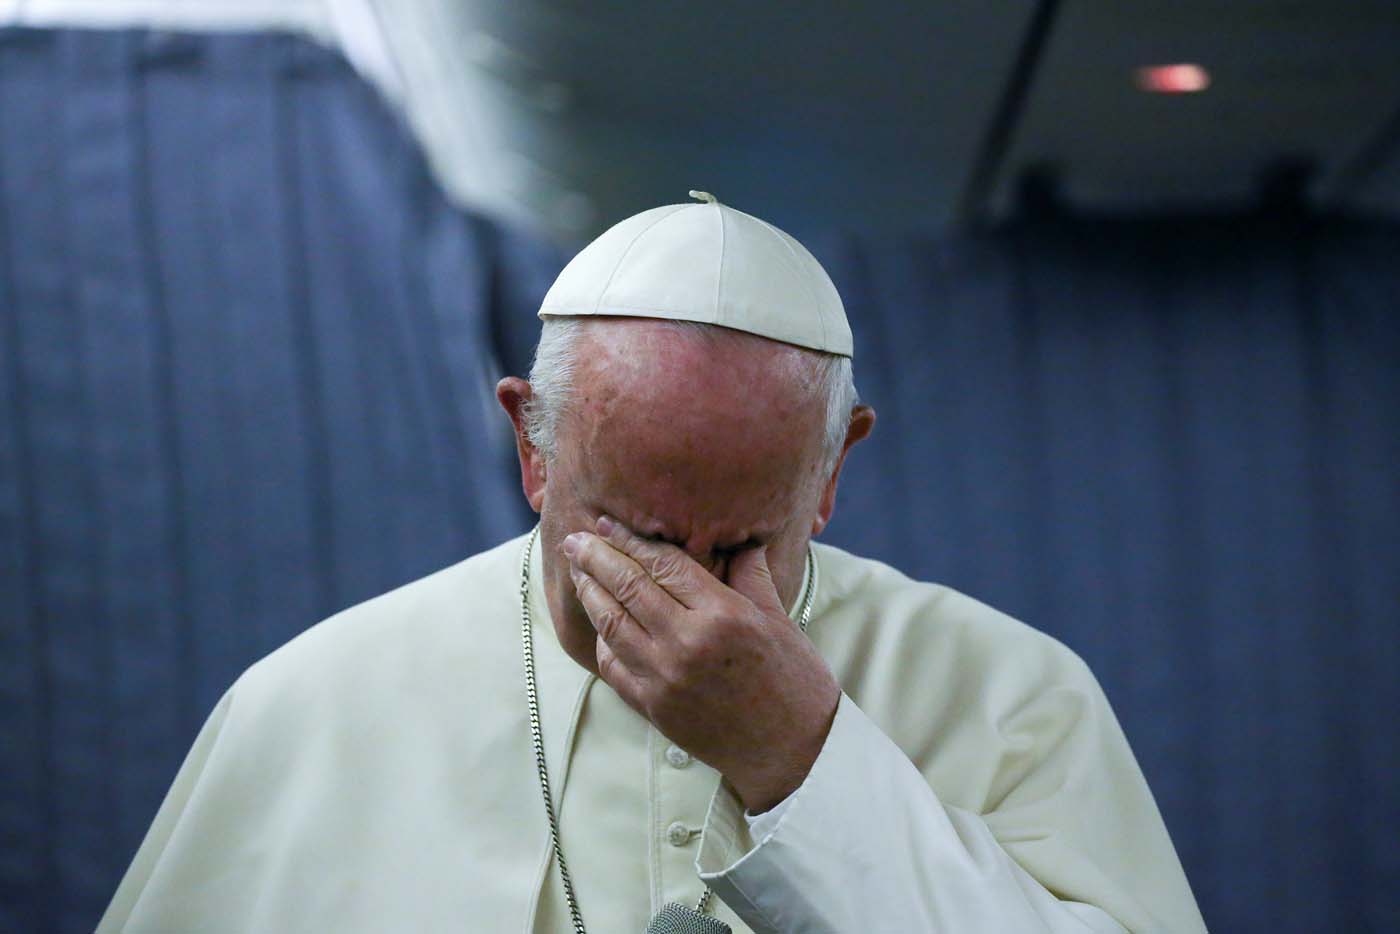 El Papa pidió perdón a víctimas de abuso sexual por haber pedido “pruebas”